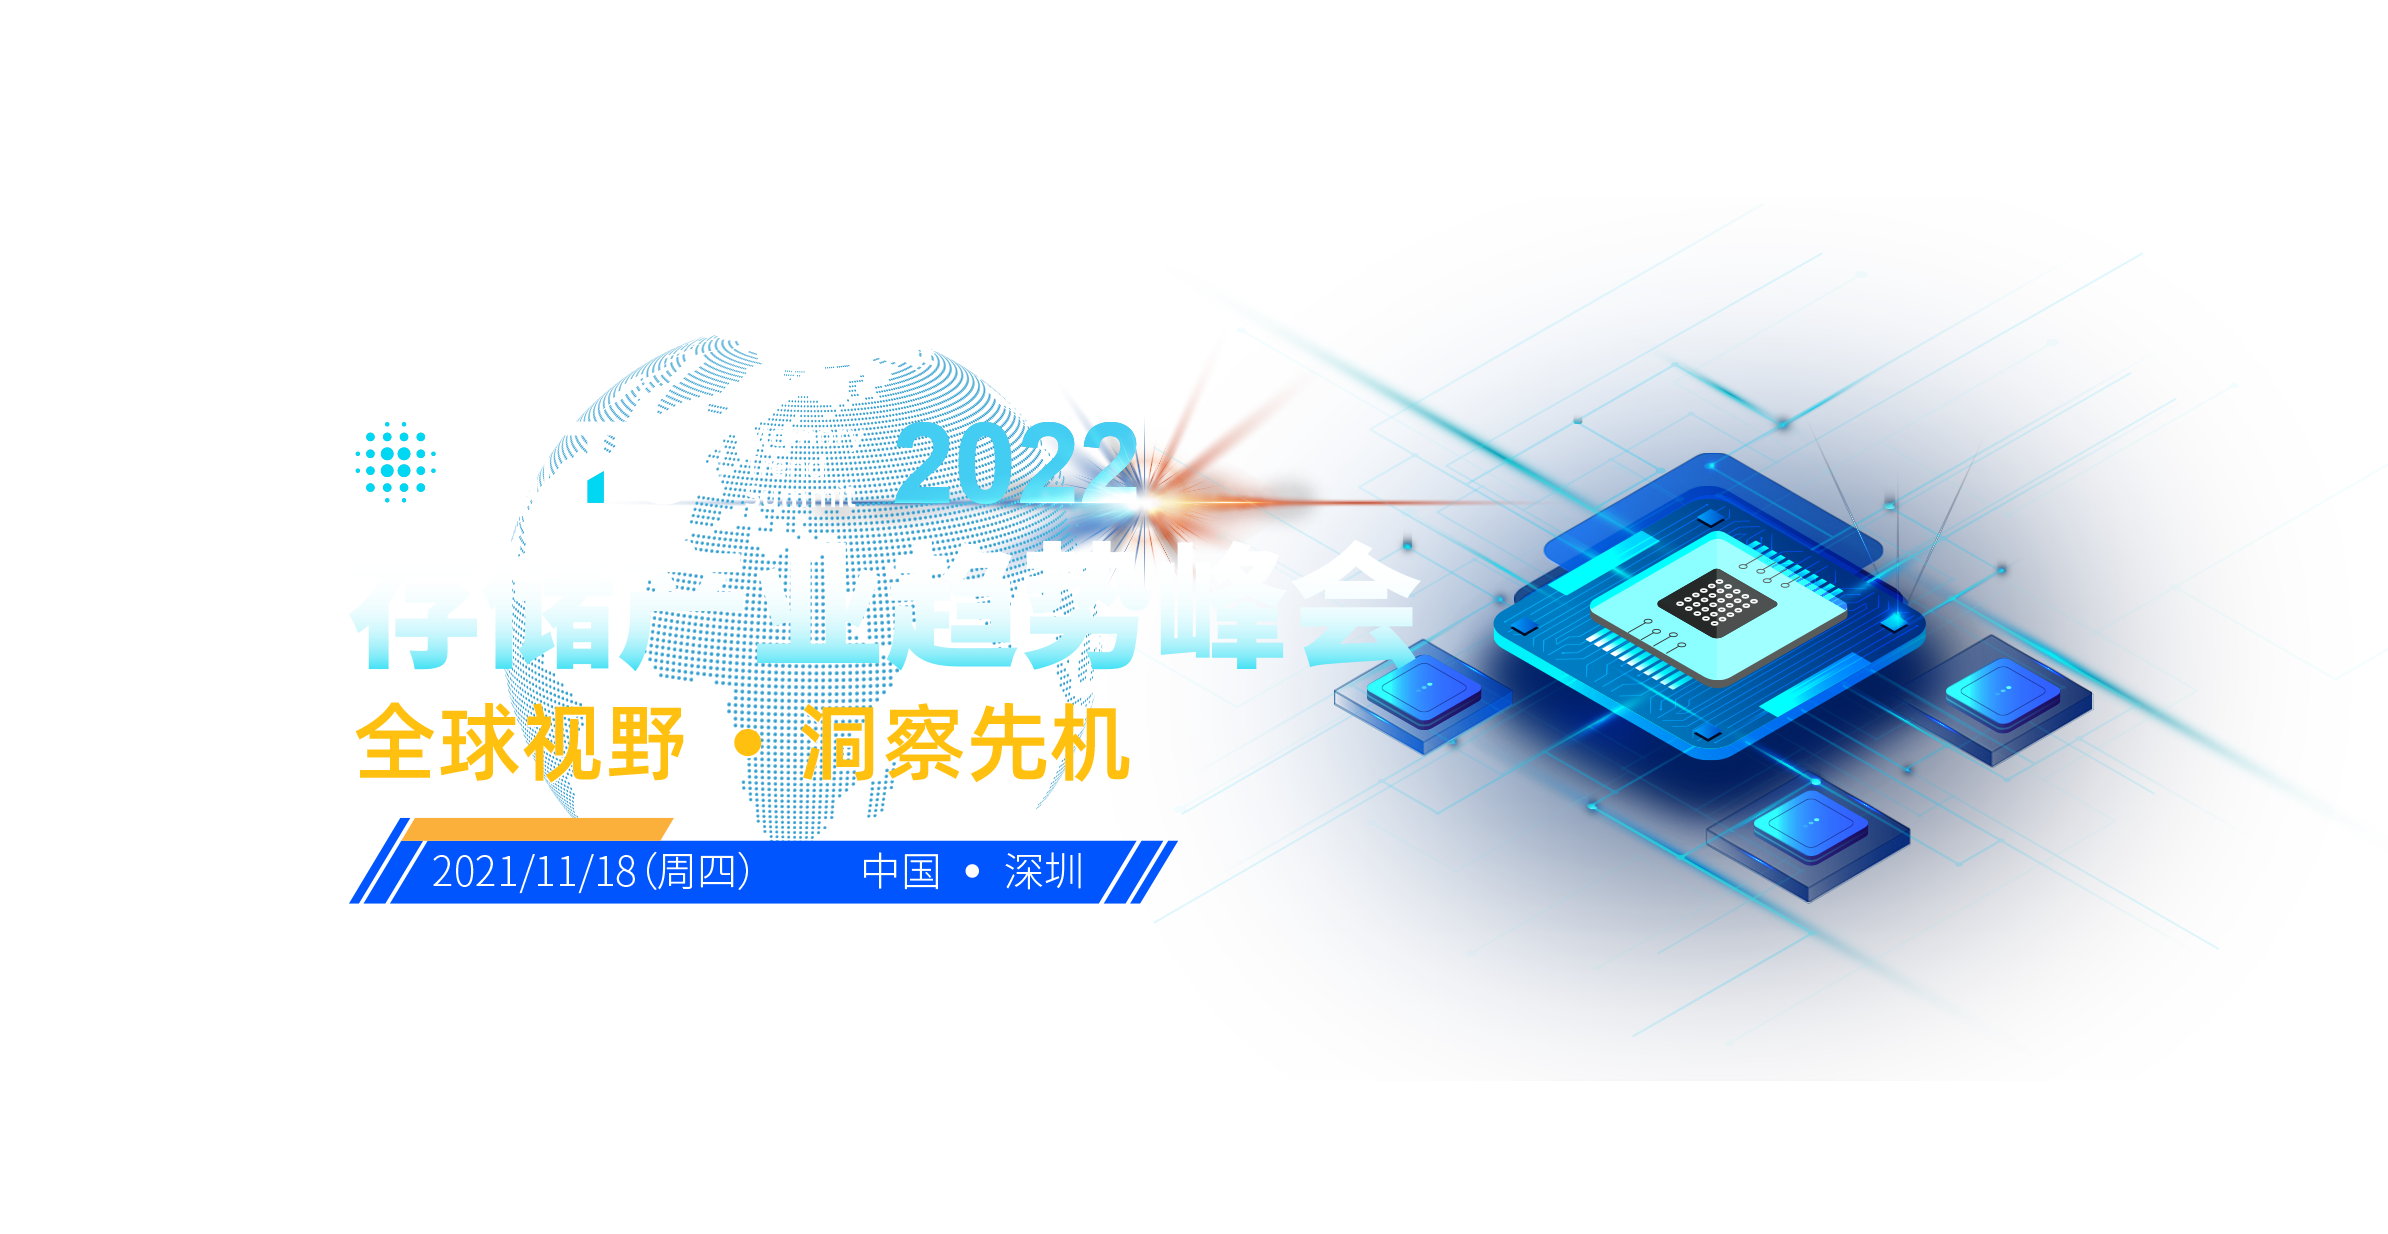 MTS 2022